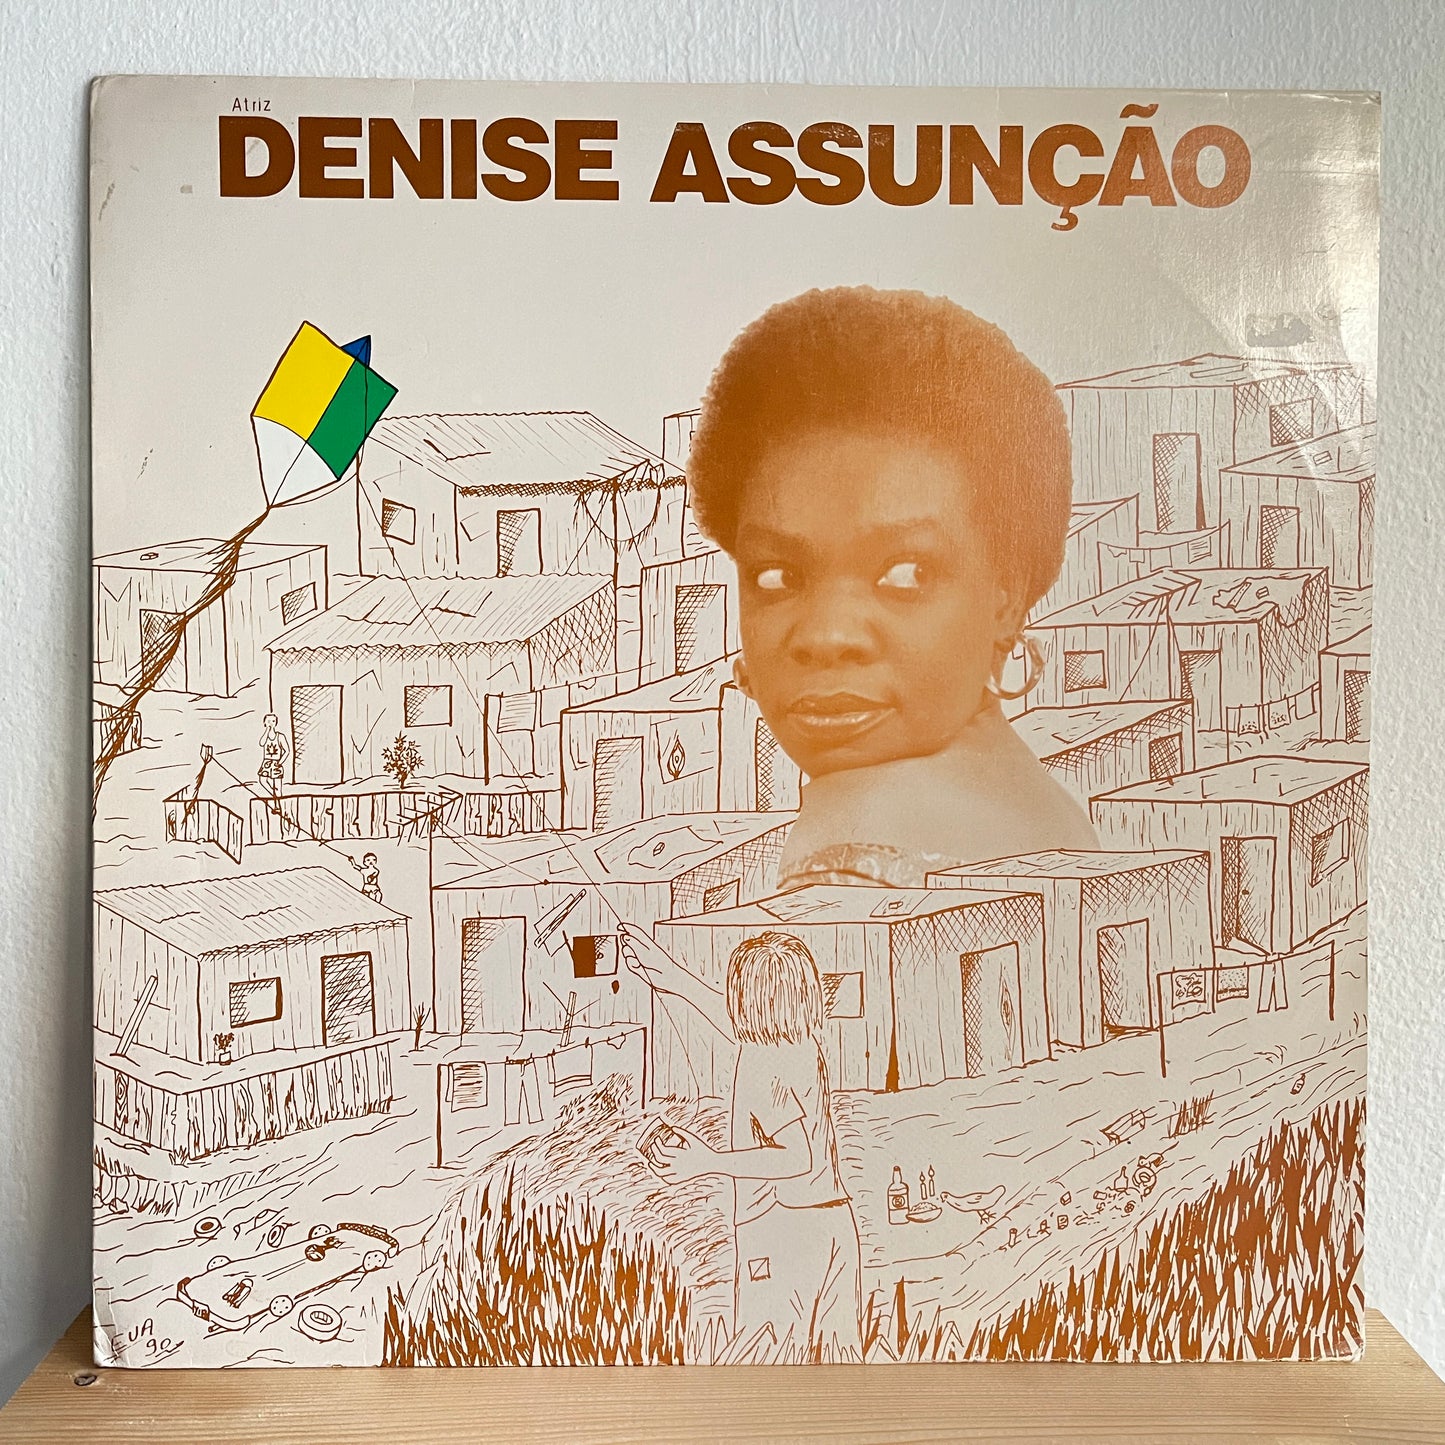 Denise Assunção – A Maior Bandeira Brasileira